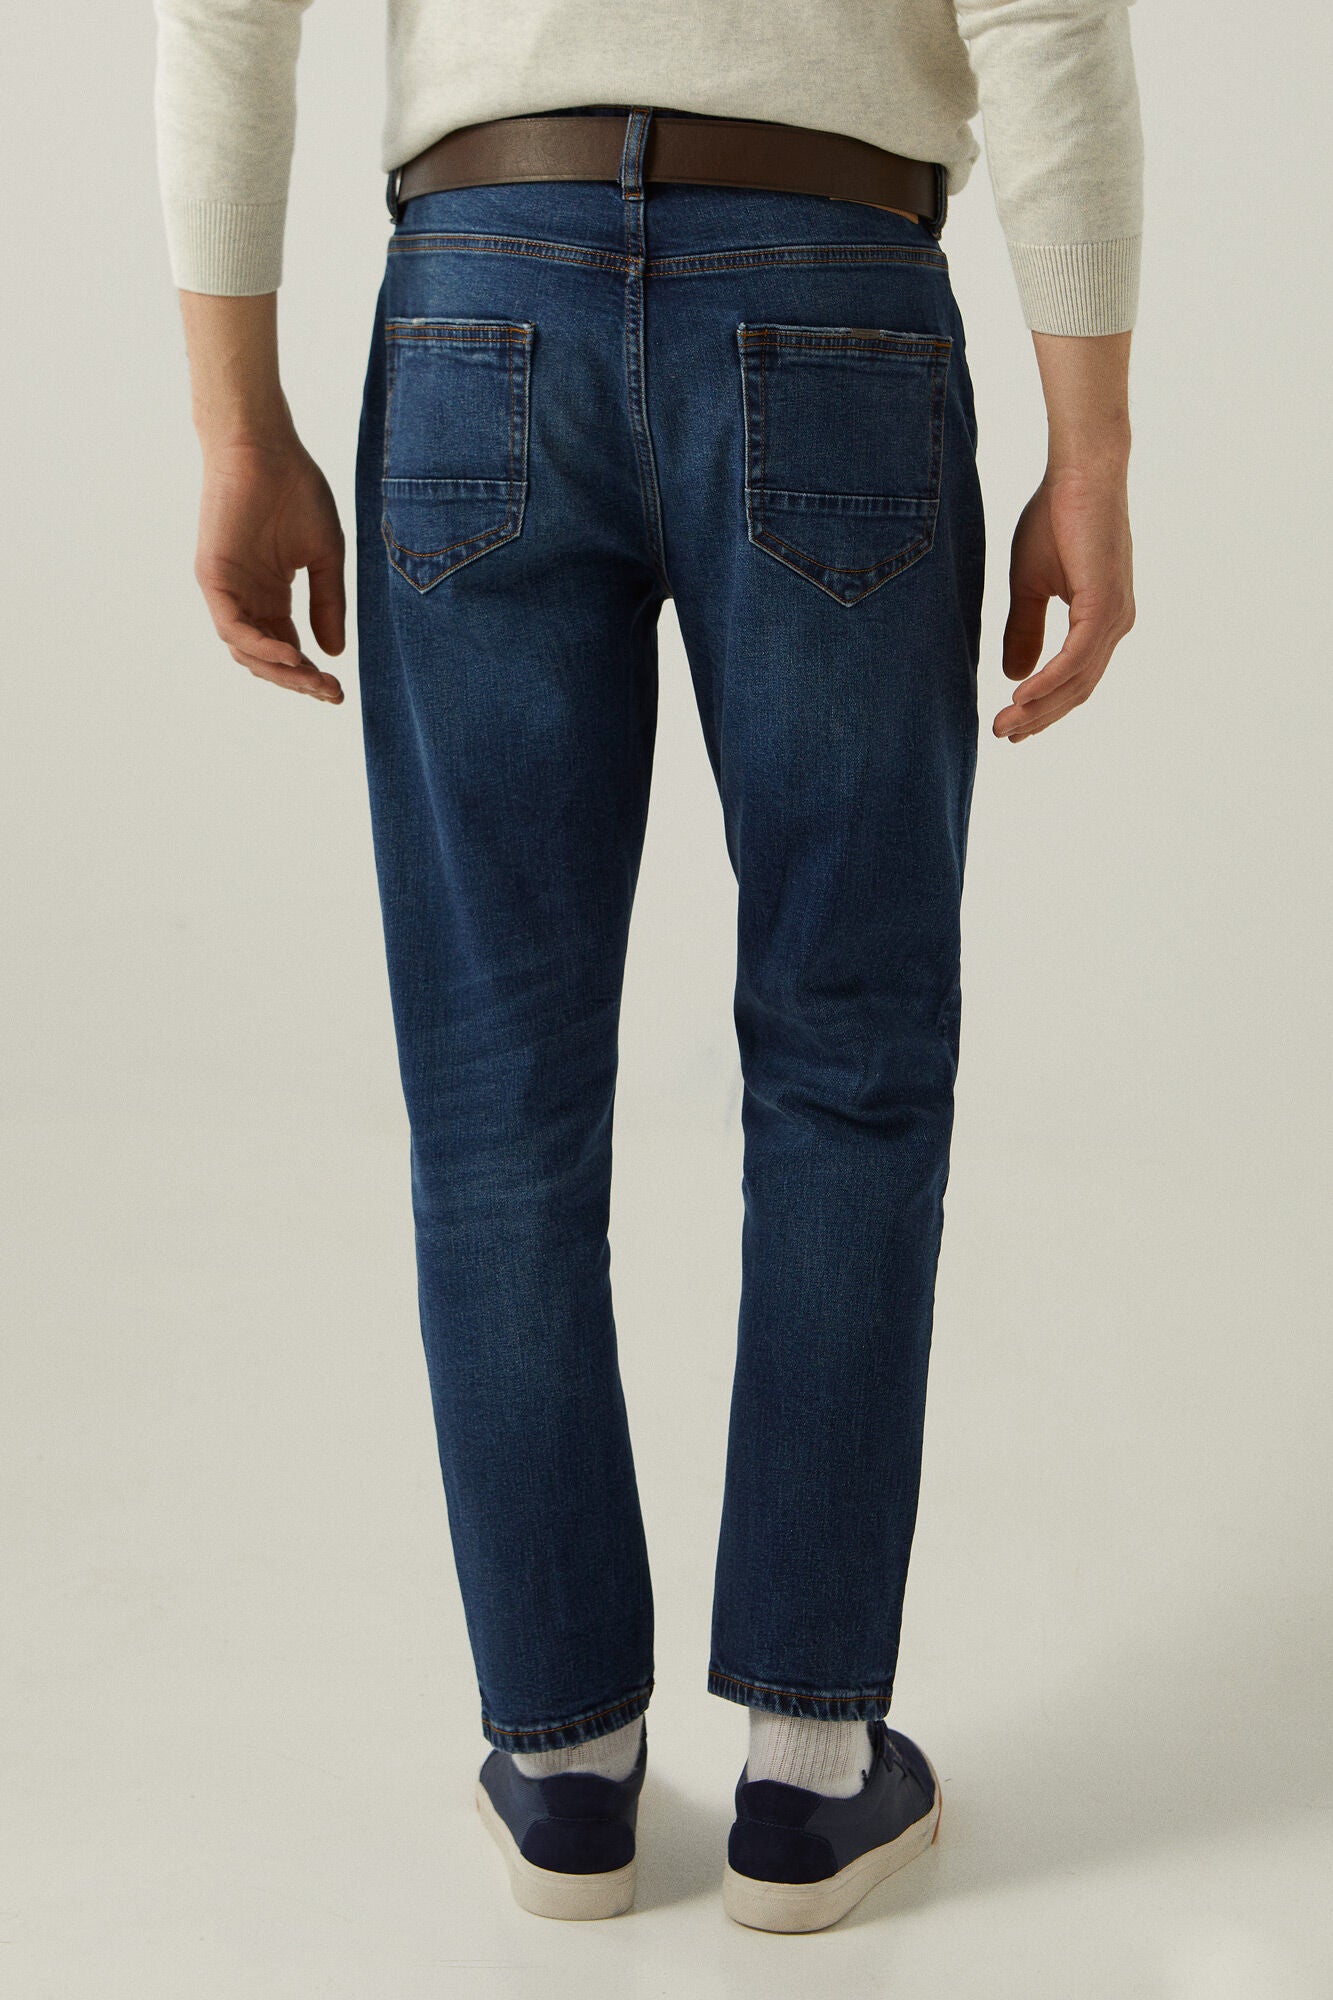 Medium-dark wash comfort slim fit jeans